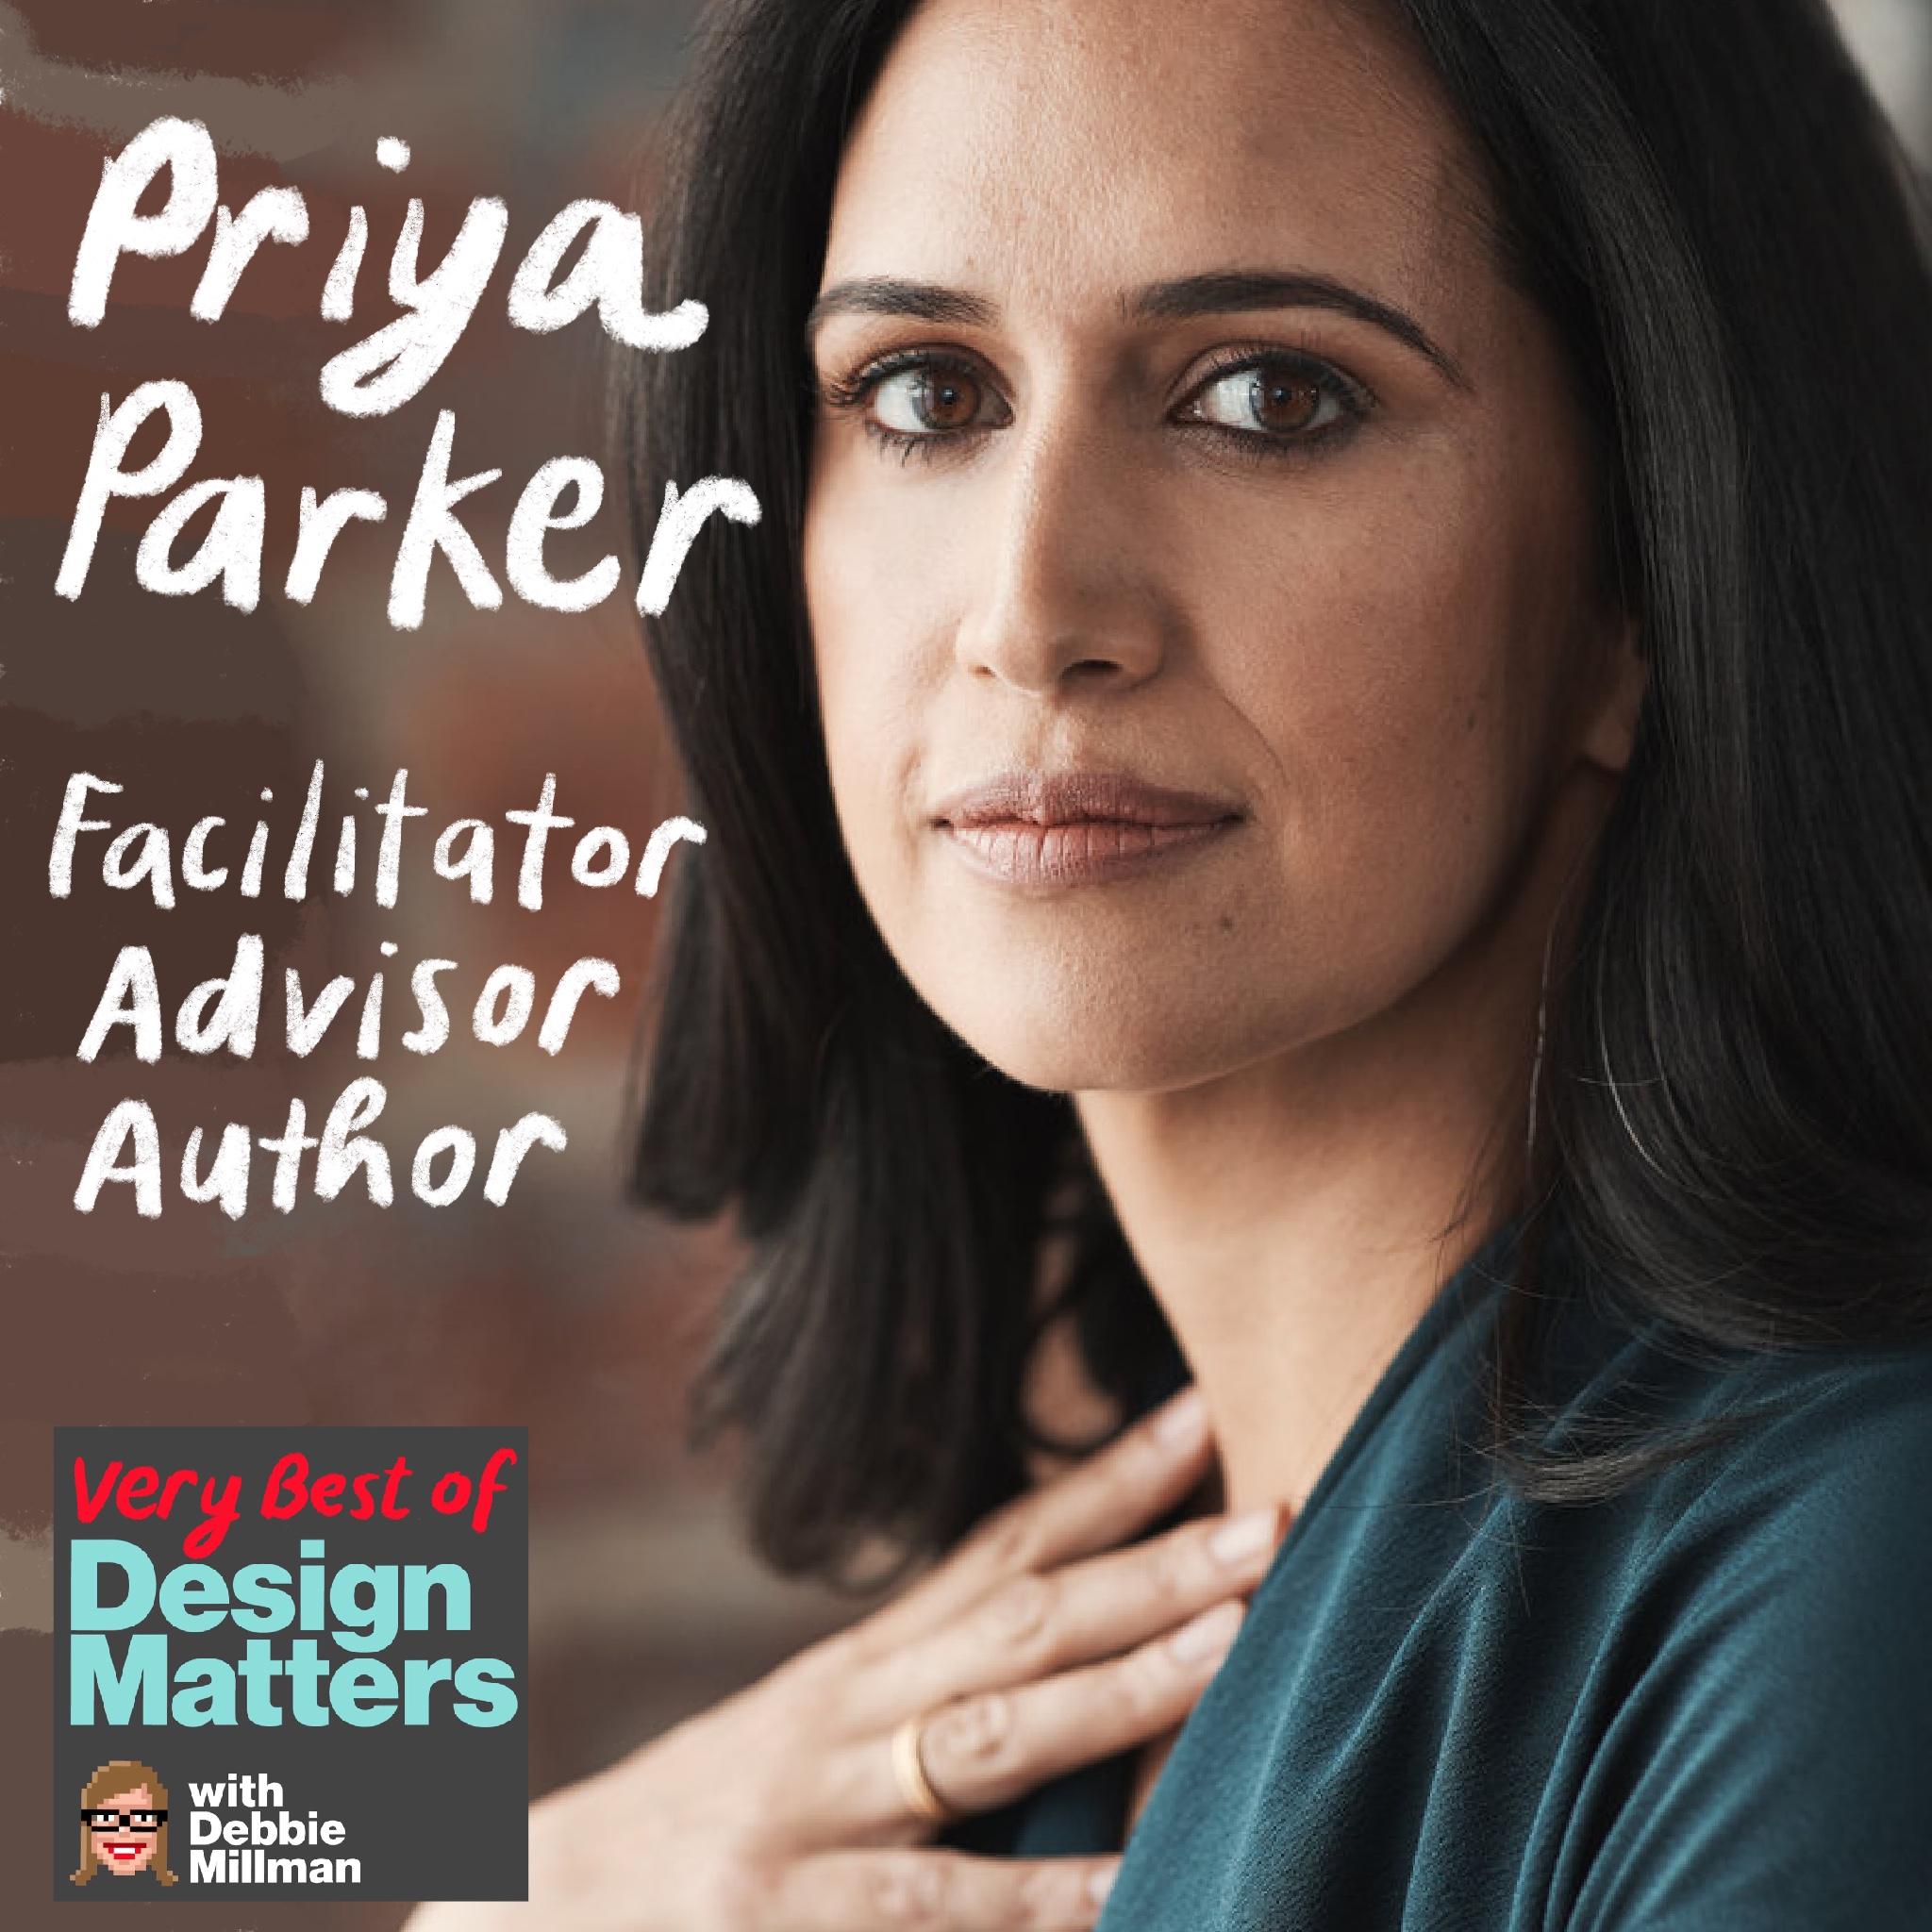 Thumbnail for "Best of Design Matters: Priya Parker".